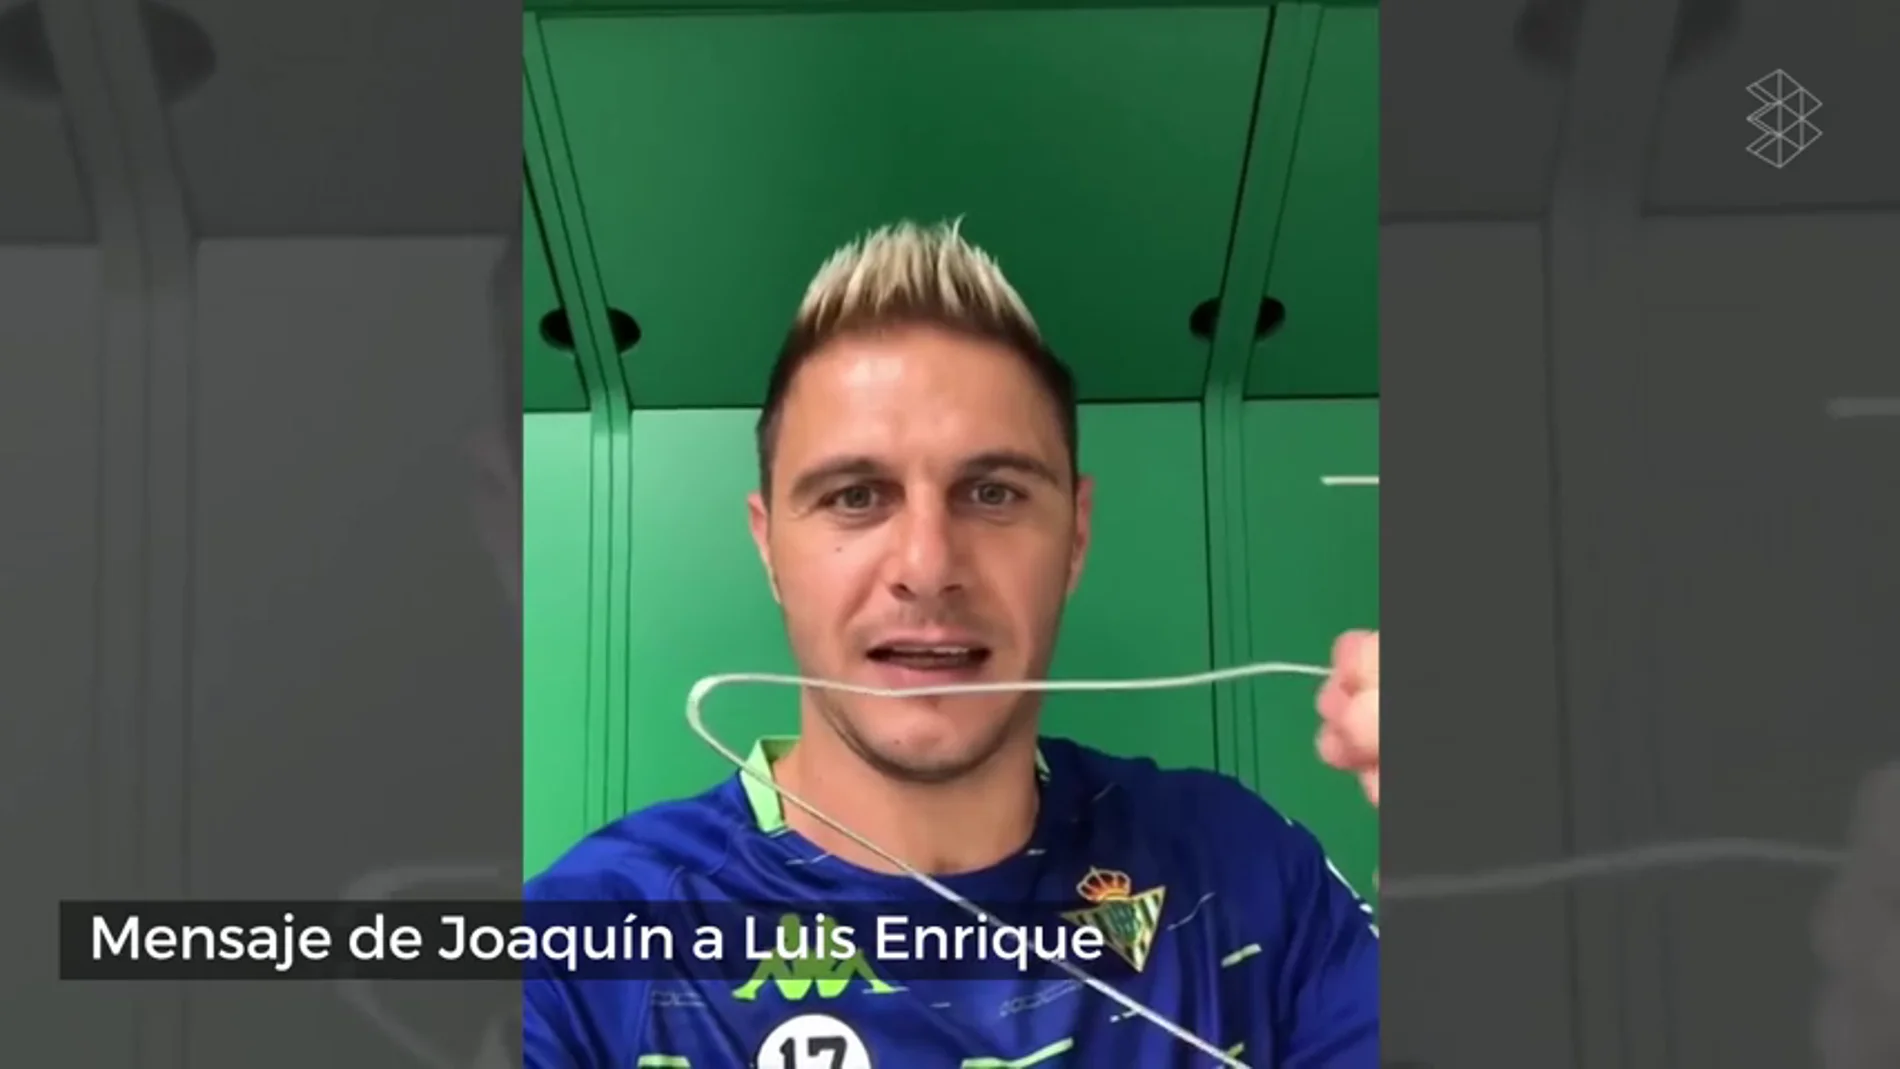 El mensaje de Joaquín a Luis Enrique tras no ir convocado con España: "Quillo, la percha está aquí..." 